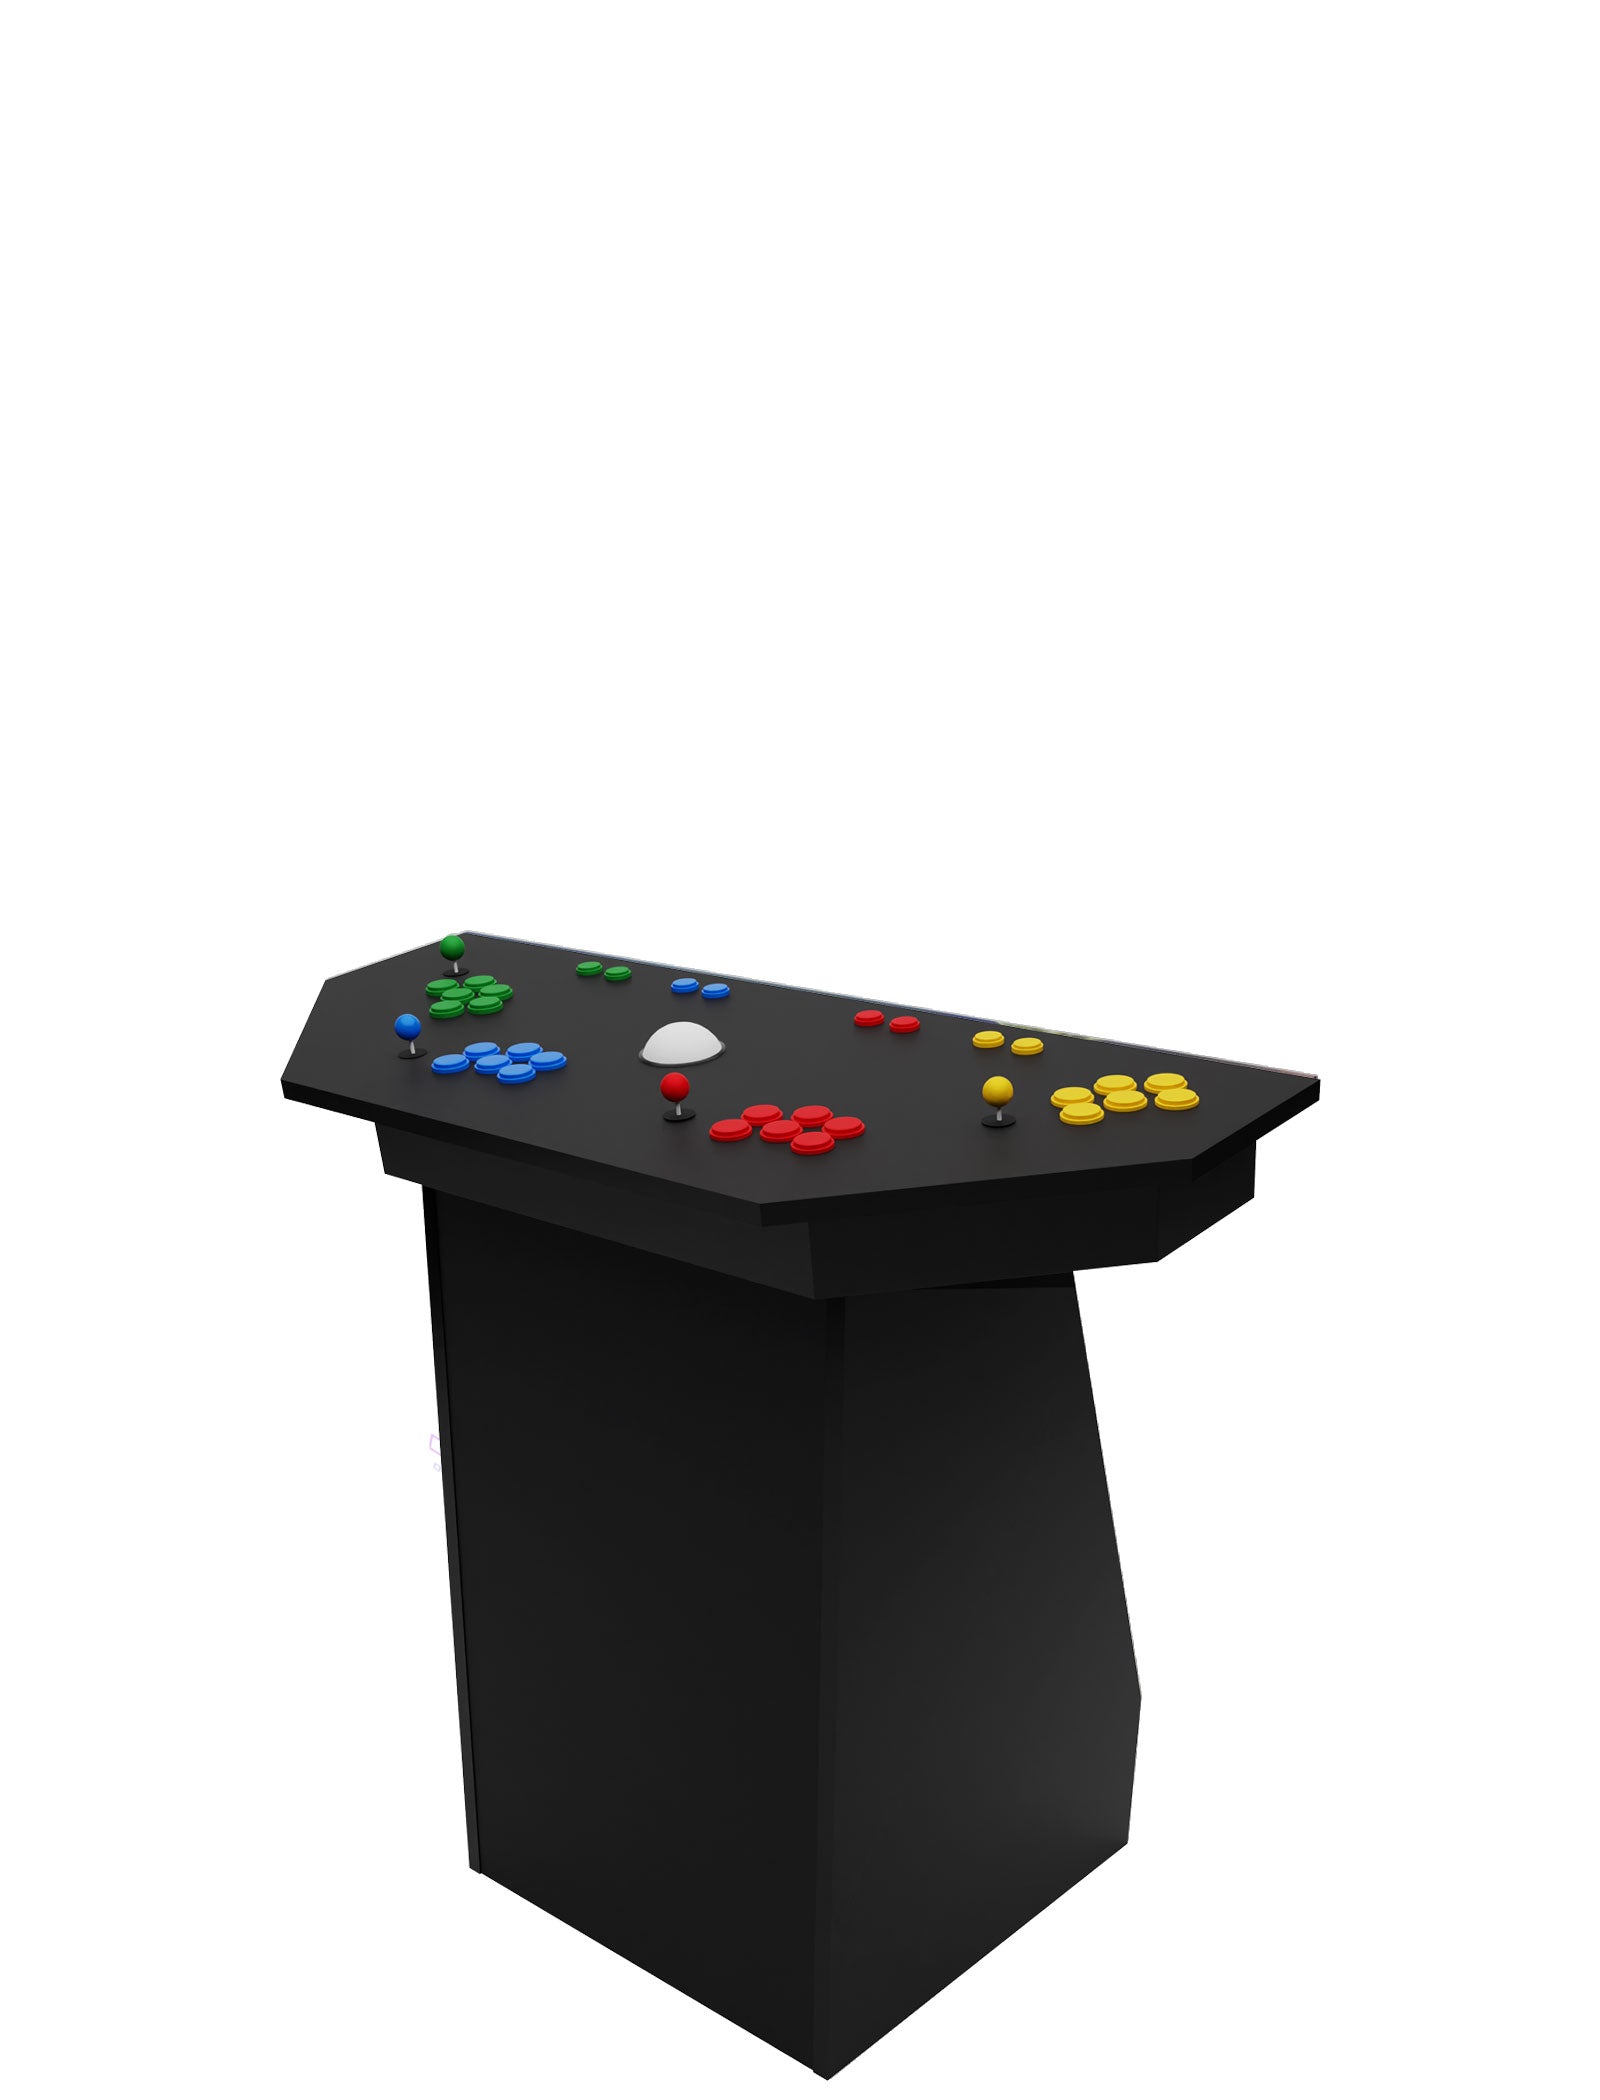 2 Player Arcade Machine Basic